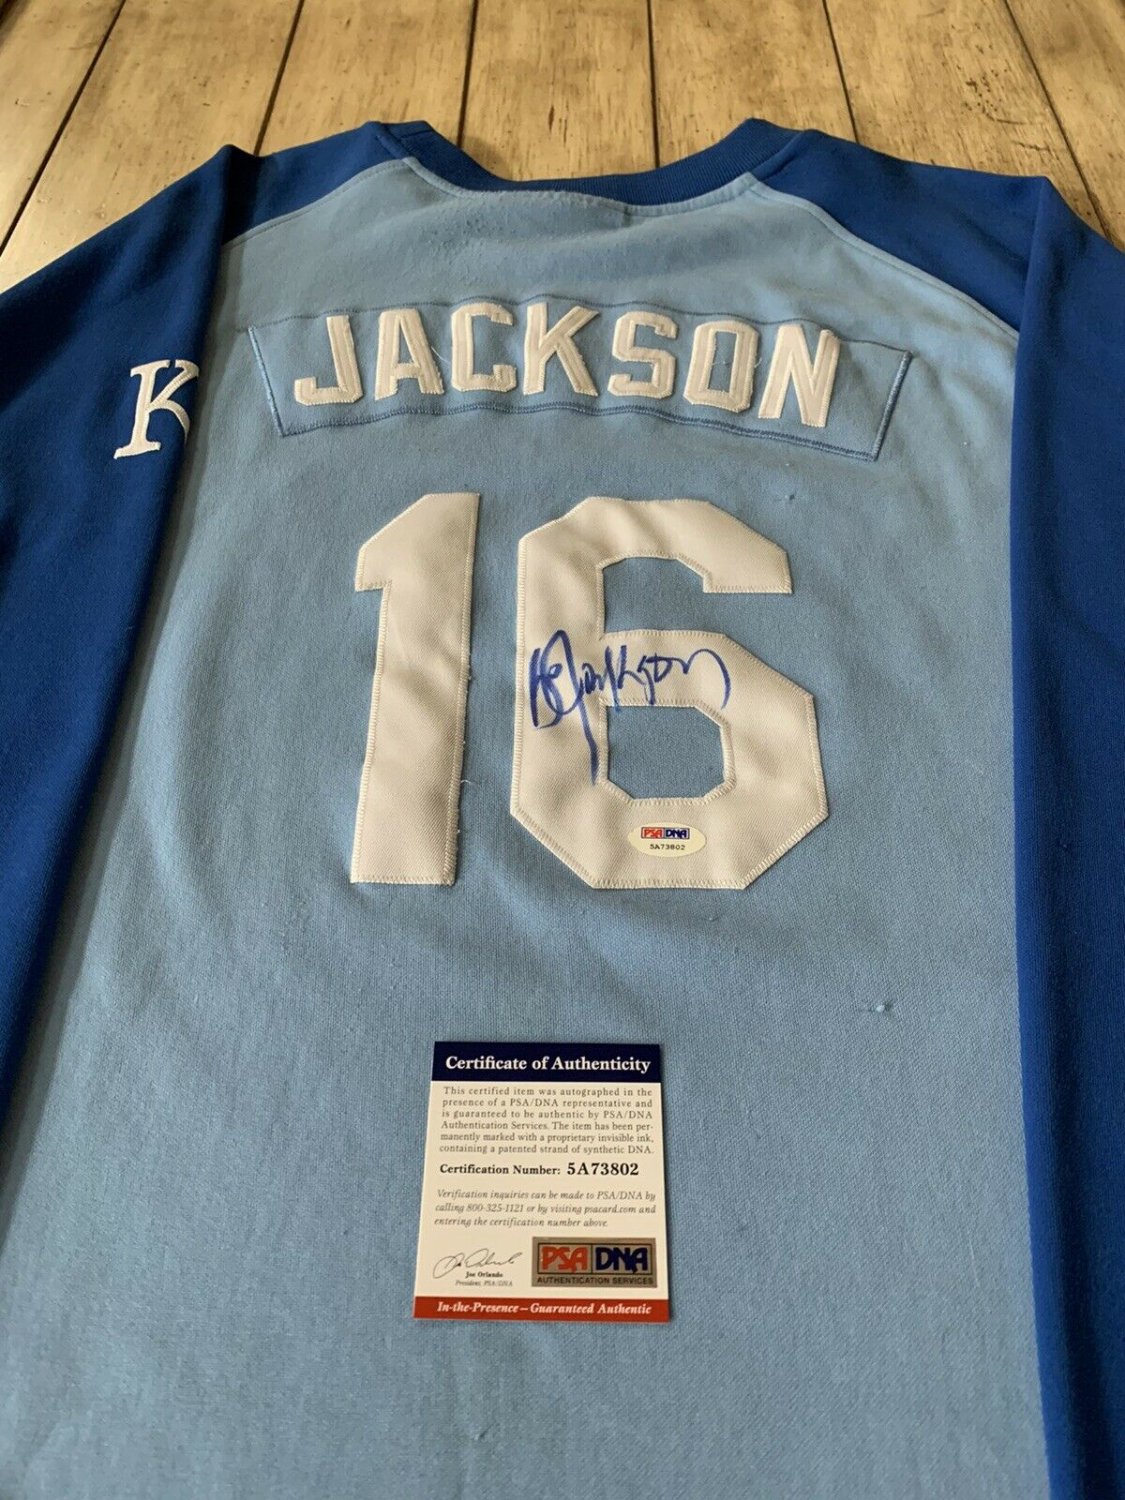 bo jackson signed jersey